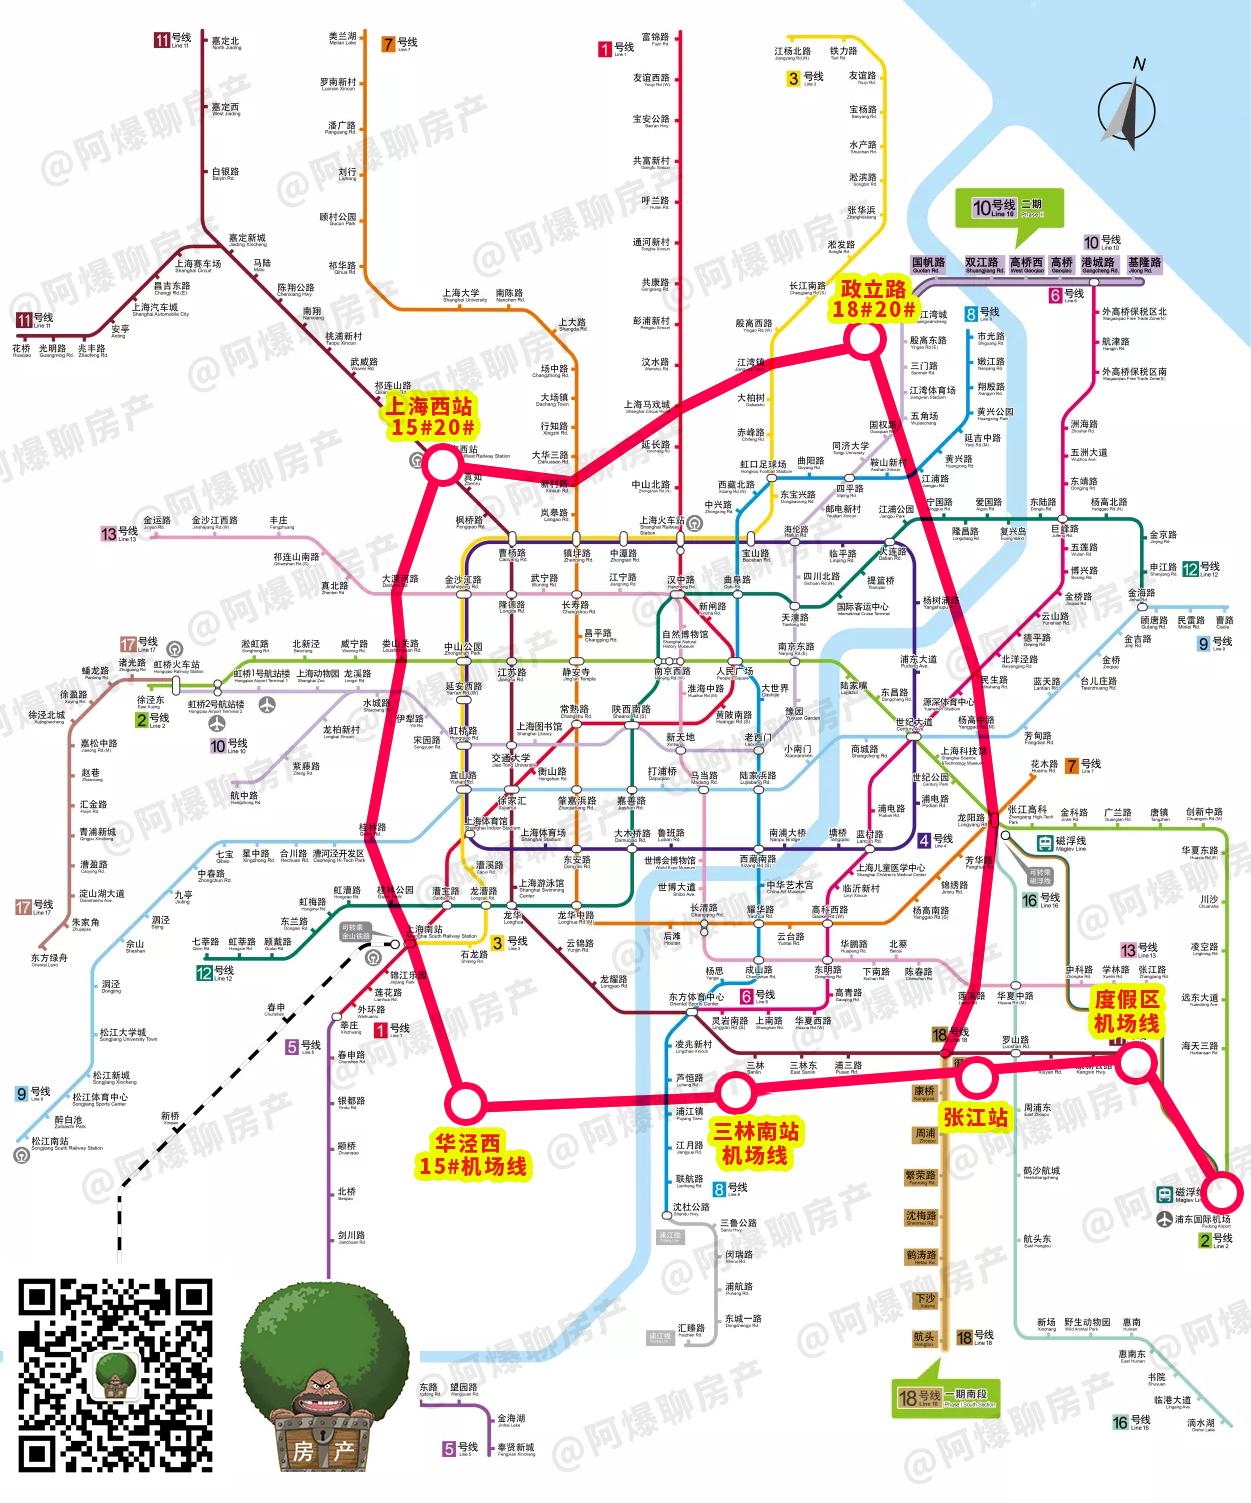 20号线工可招标!上海第二条地铁环线初见雏形!